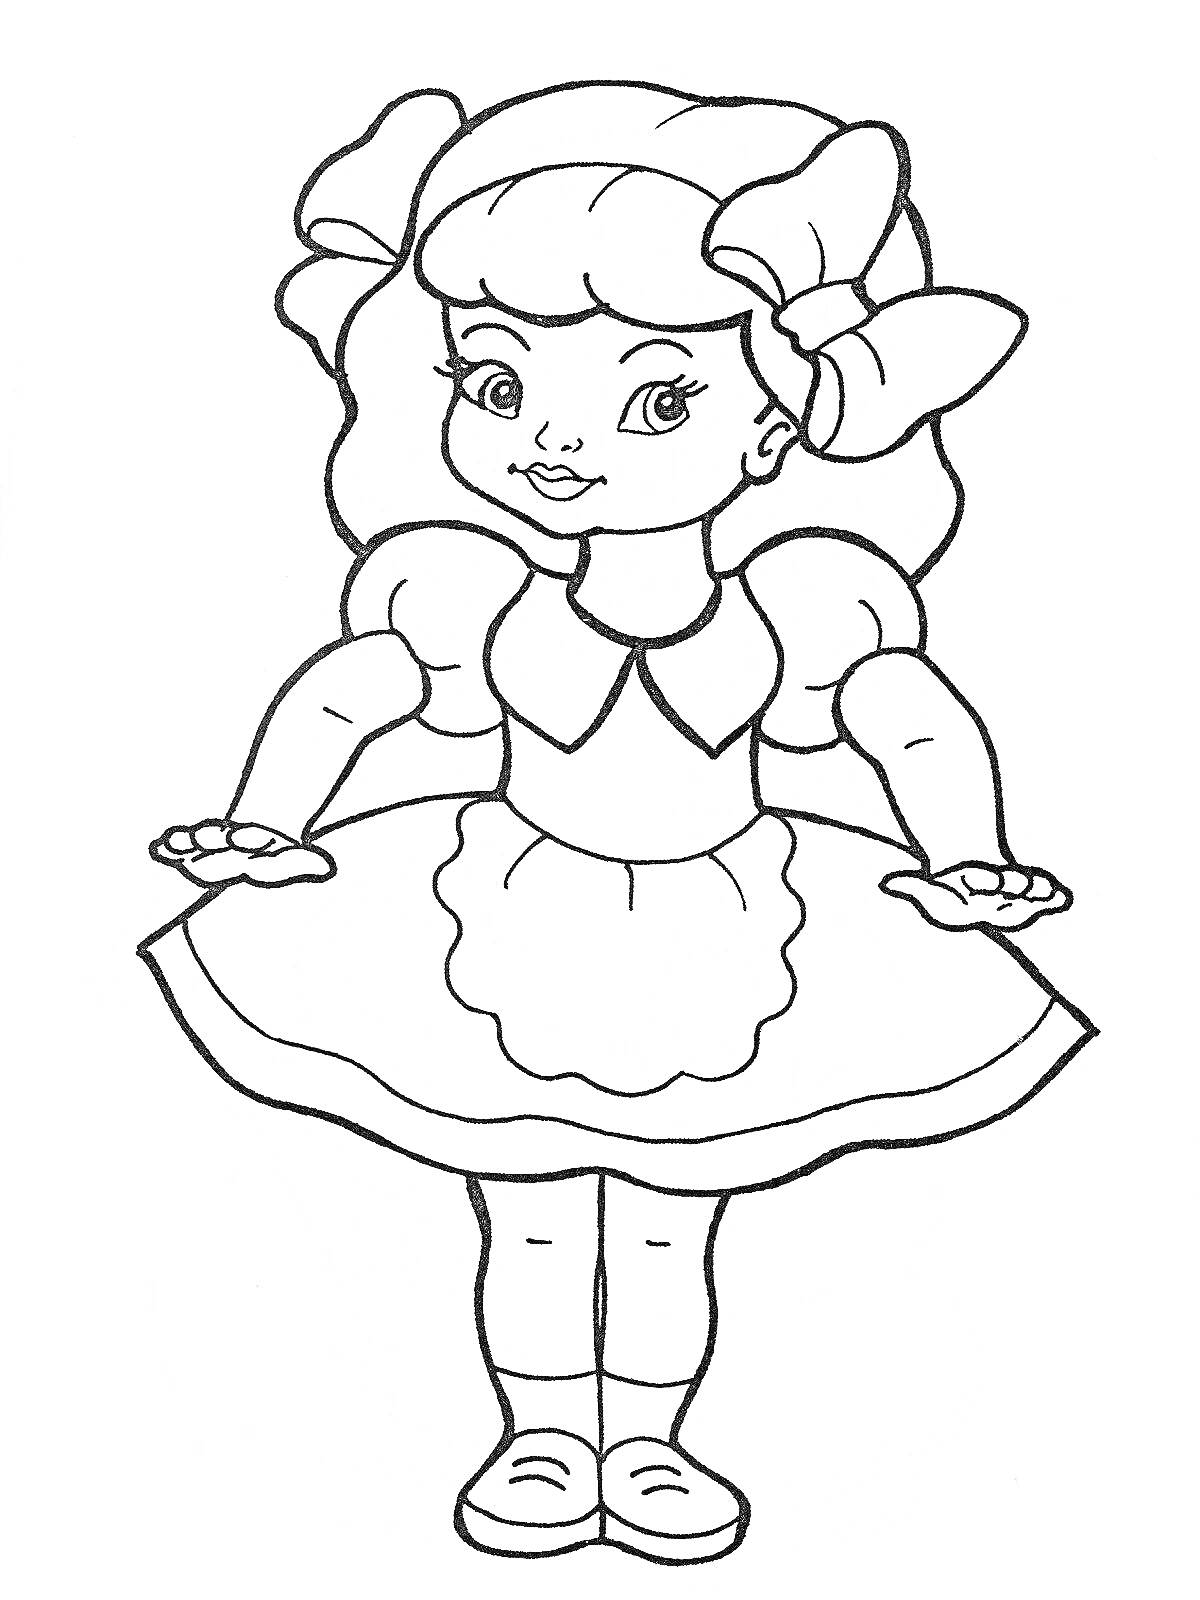 Раскраска Куколка с большими бантиками, в платье с фартуком и туфельках